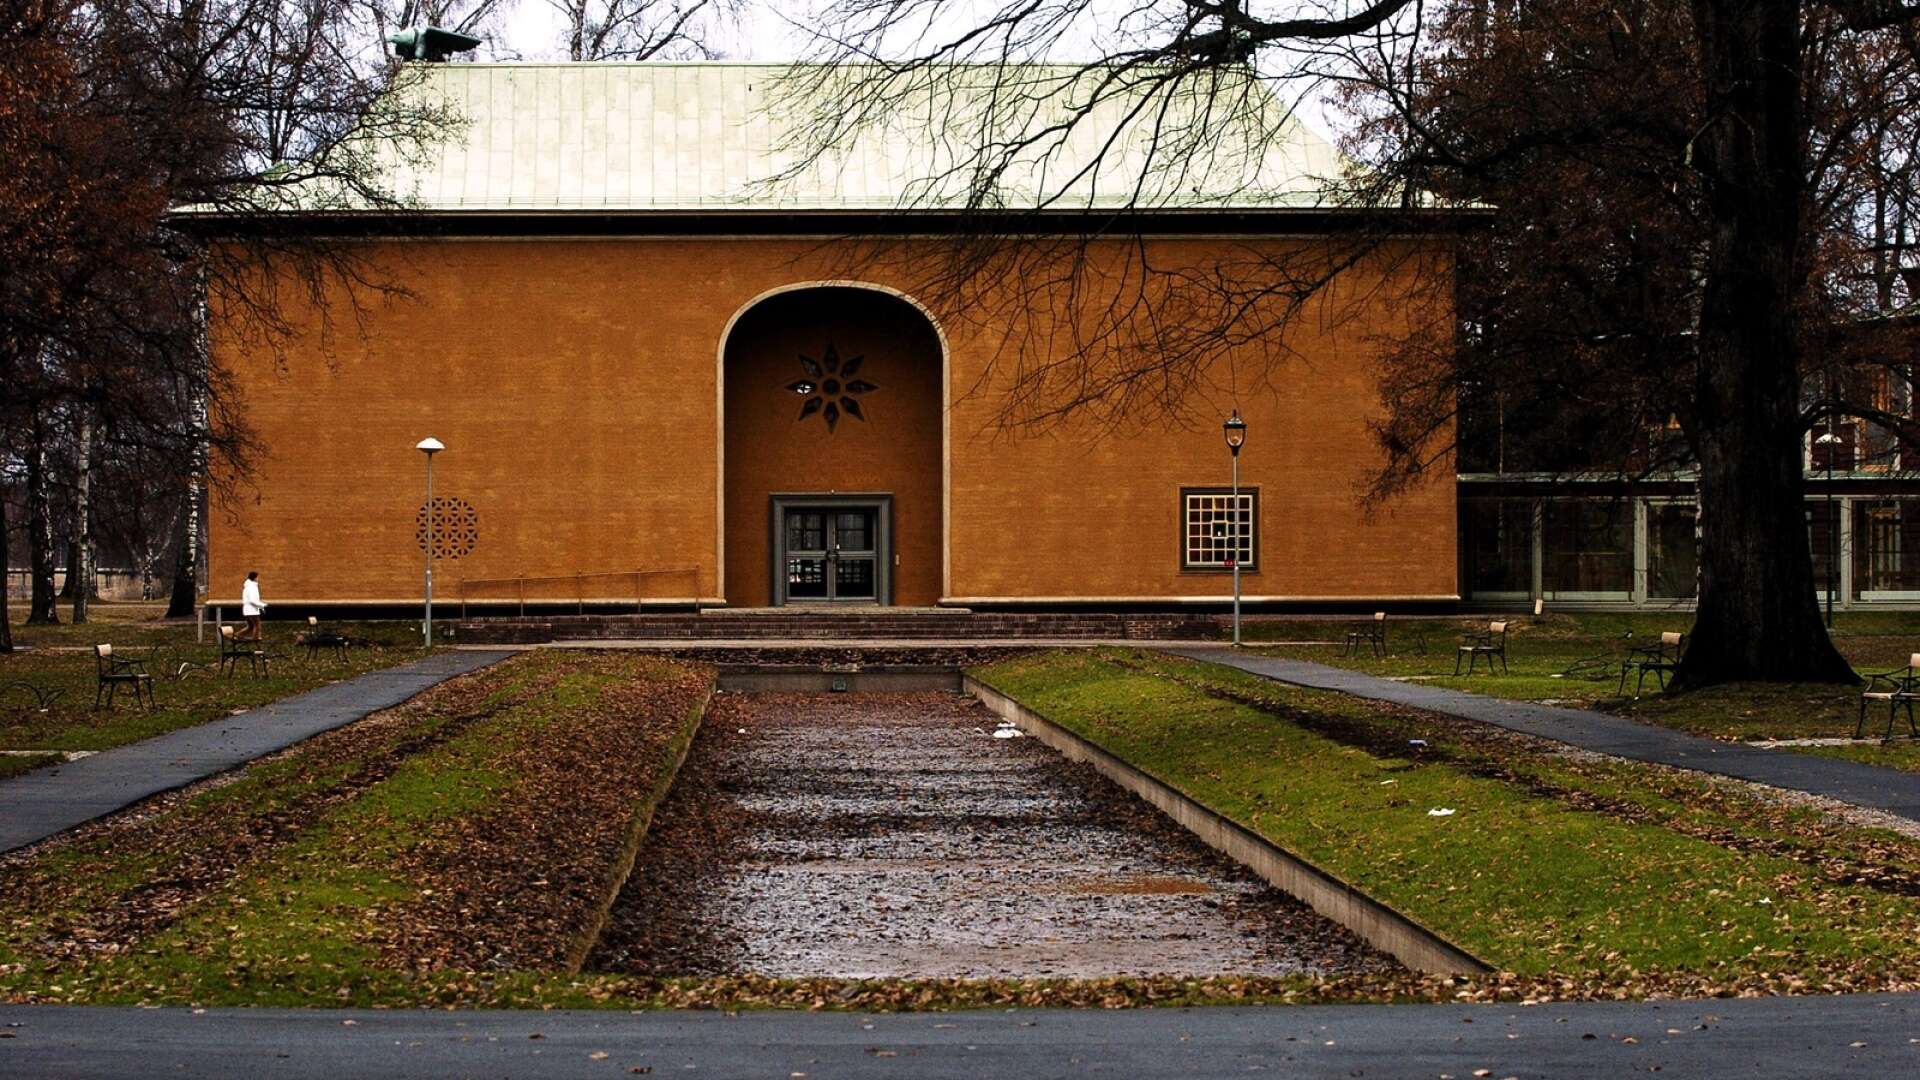 Den högtidliga byggnaden, som utgör Värmlands museums äldsta del, invigdes 1929 och är ritad av arkitekten Cyrillus Johansson. I slutet av mars ska renoveringarna efter vattenläckan förhoppningsvis vara klara och lokalerna beredda för återöppnande. 